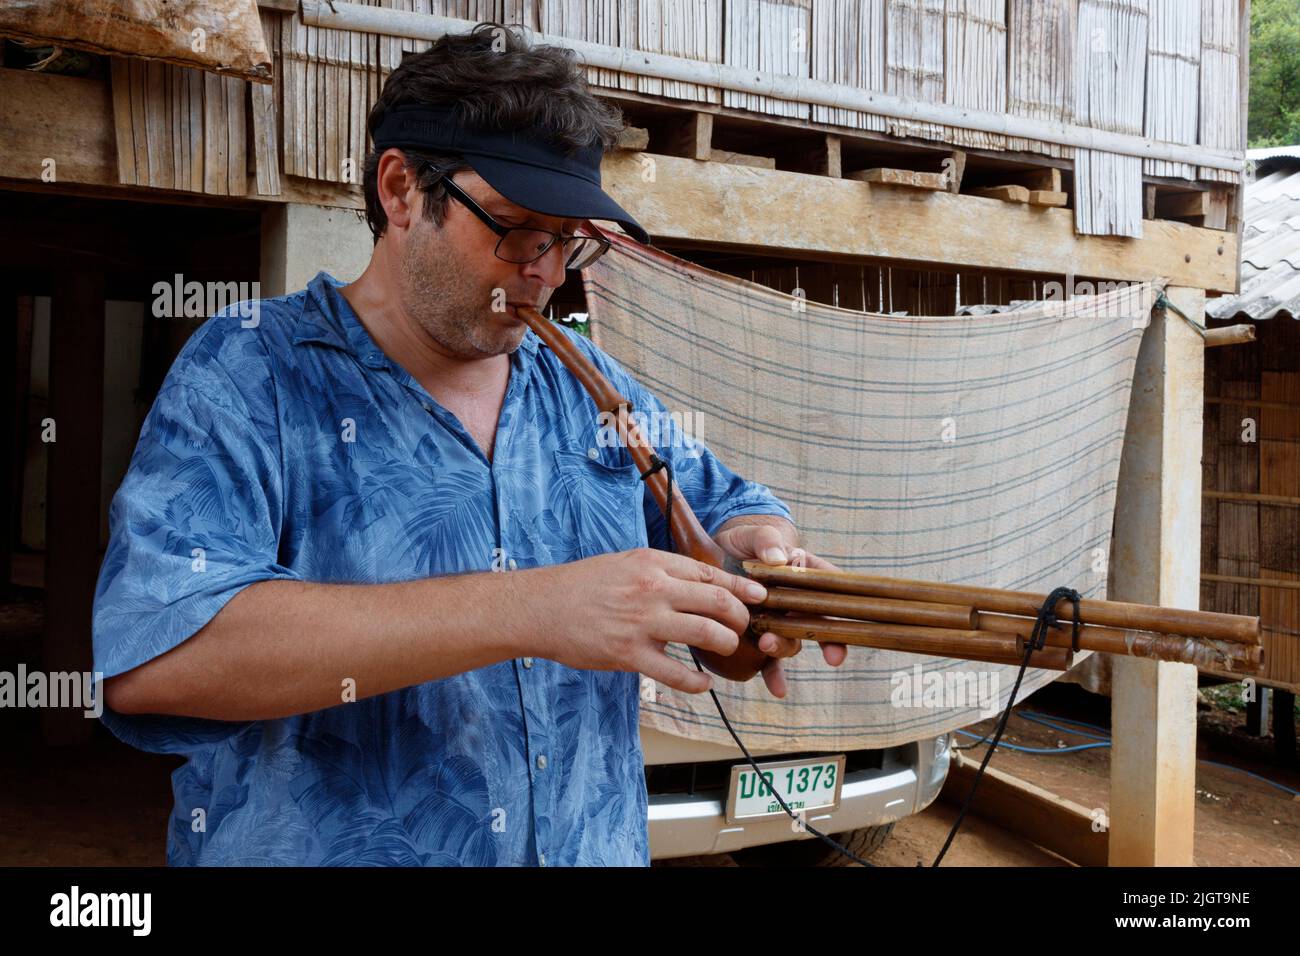 Bodhi Garrett planea un instrumento local en UNA aldea DE LIHU a lo largo del río MAE KOK, desde Thaton hasta Chiang Rai, TAILANDIA Foto de stock